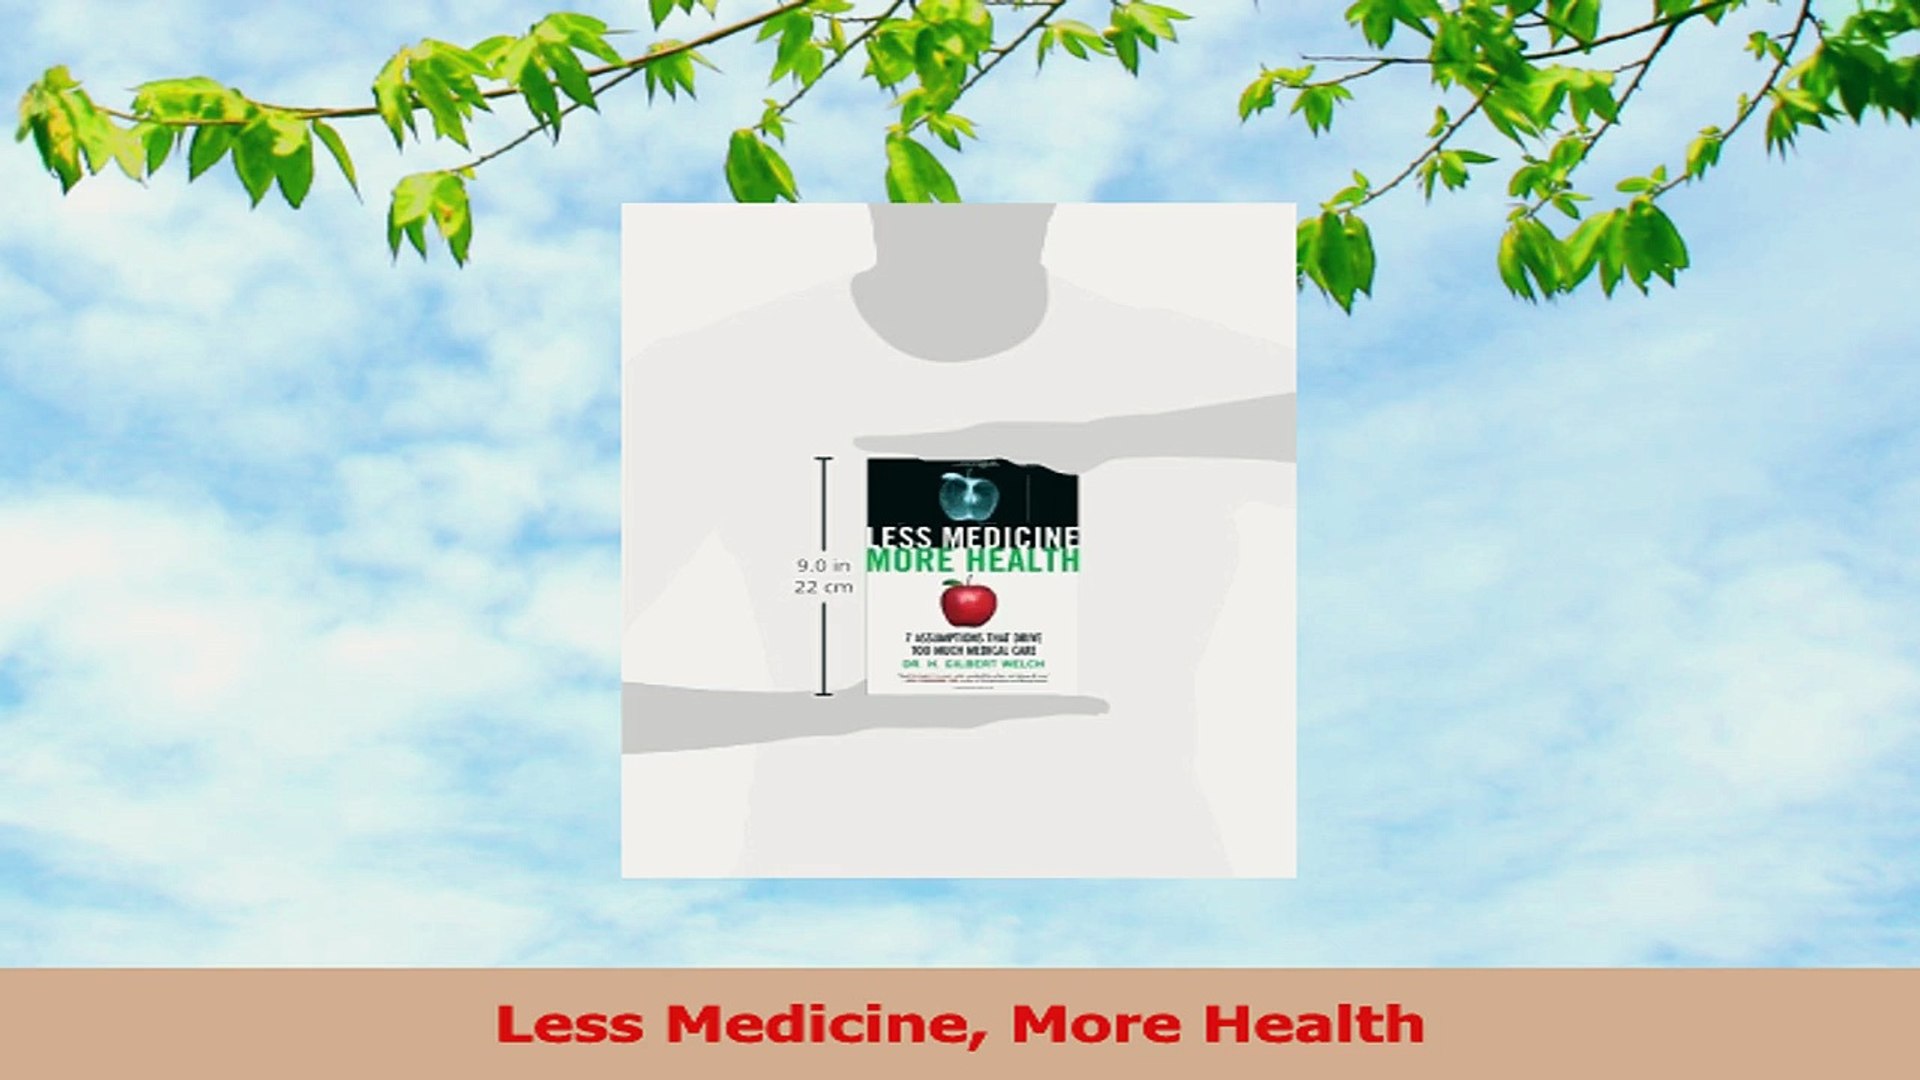 Less Medicine More Health